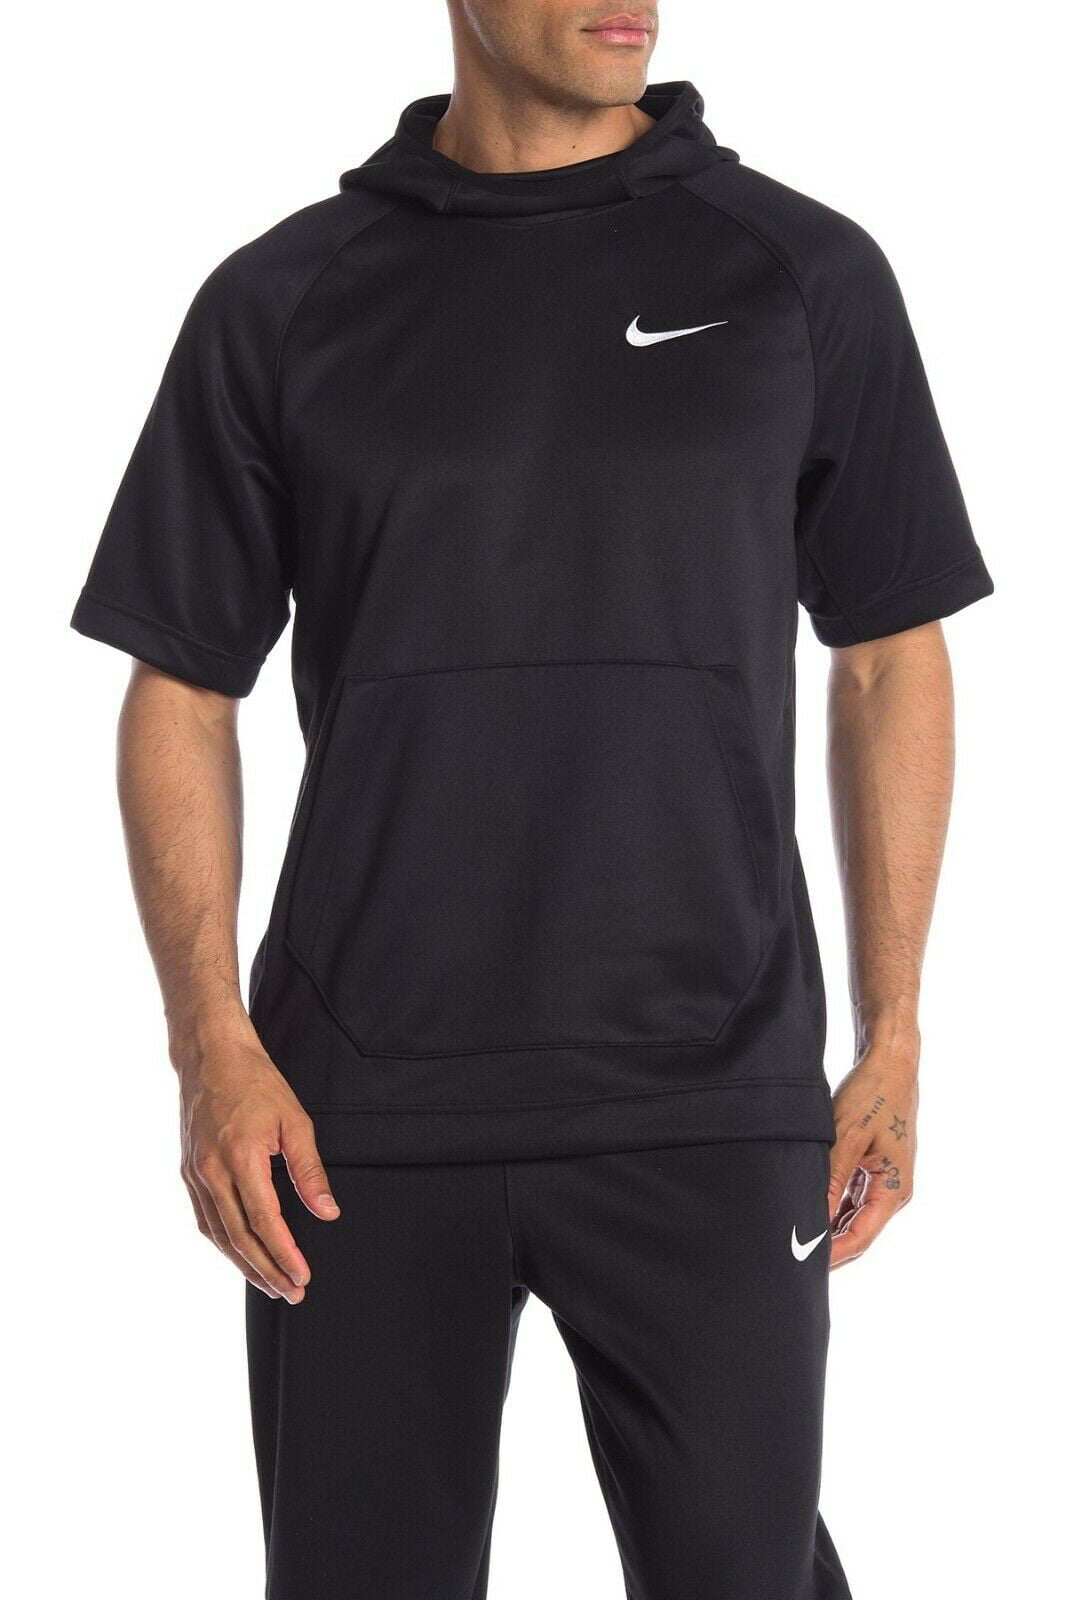 Nike Men's Charlotte Hornets Spotlight Pullover Hoodie - Macy's